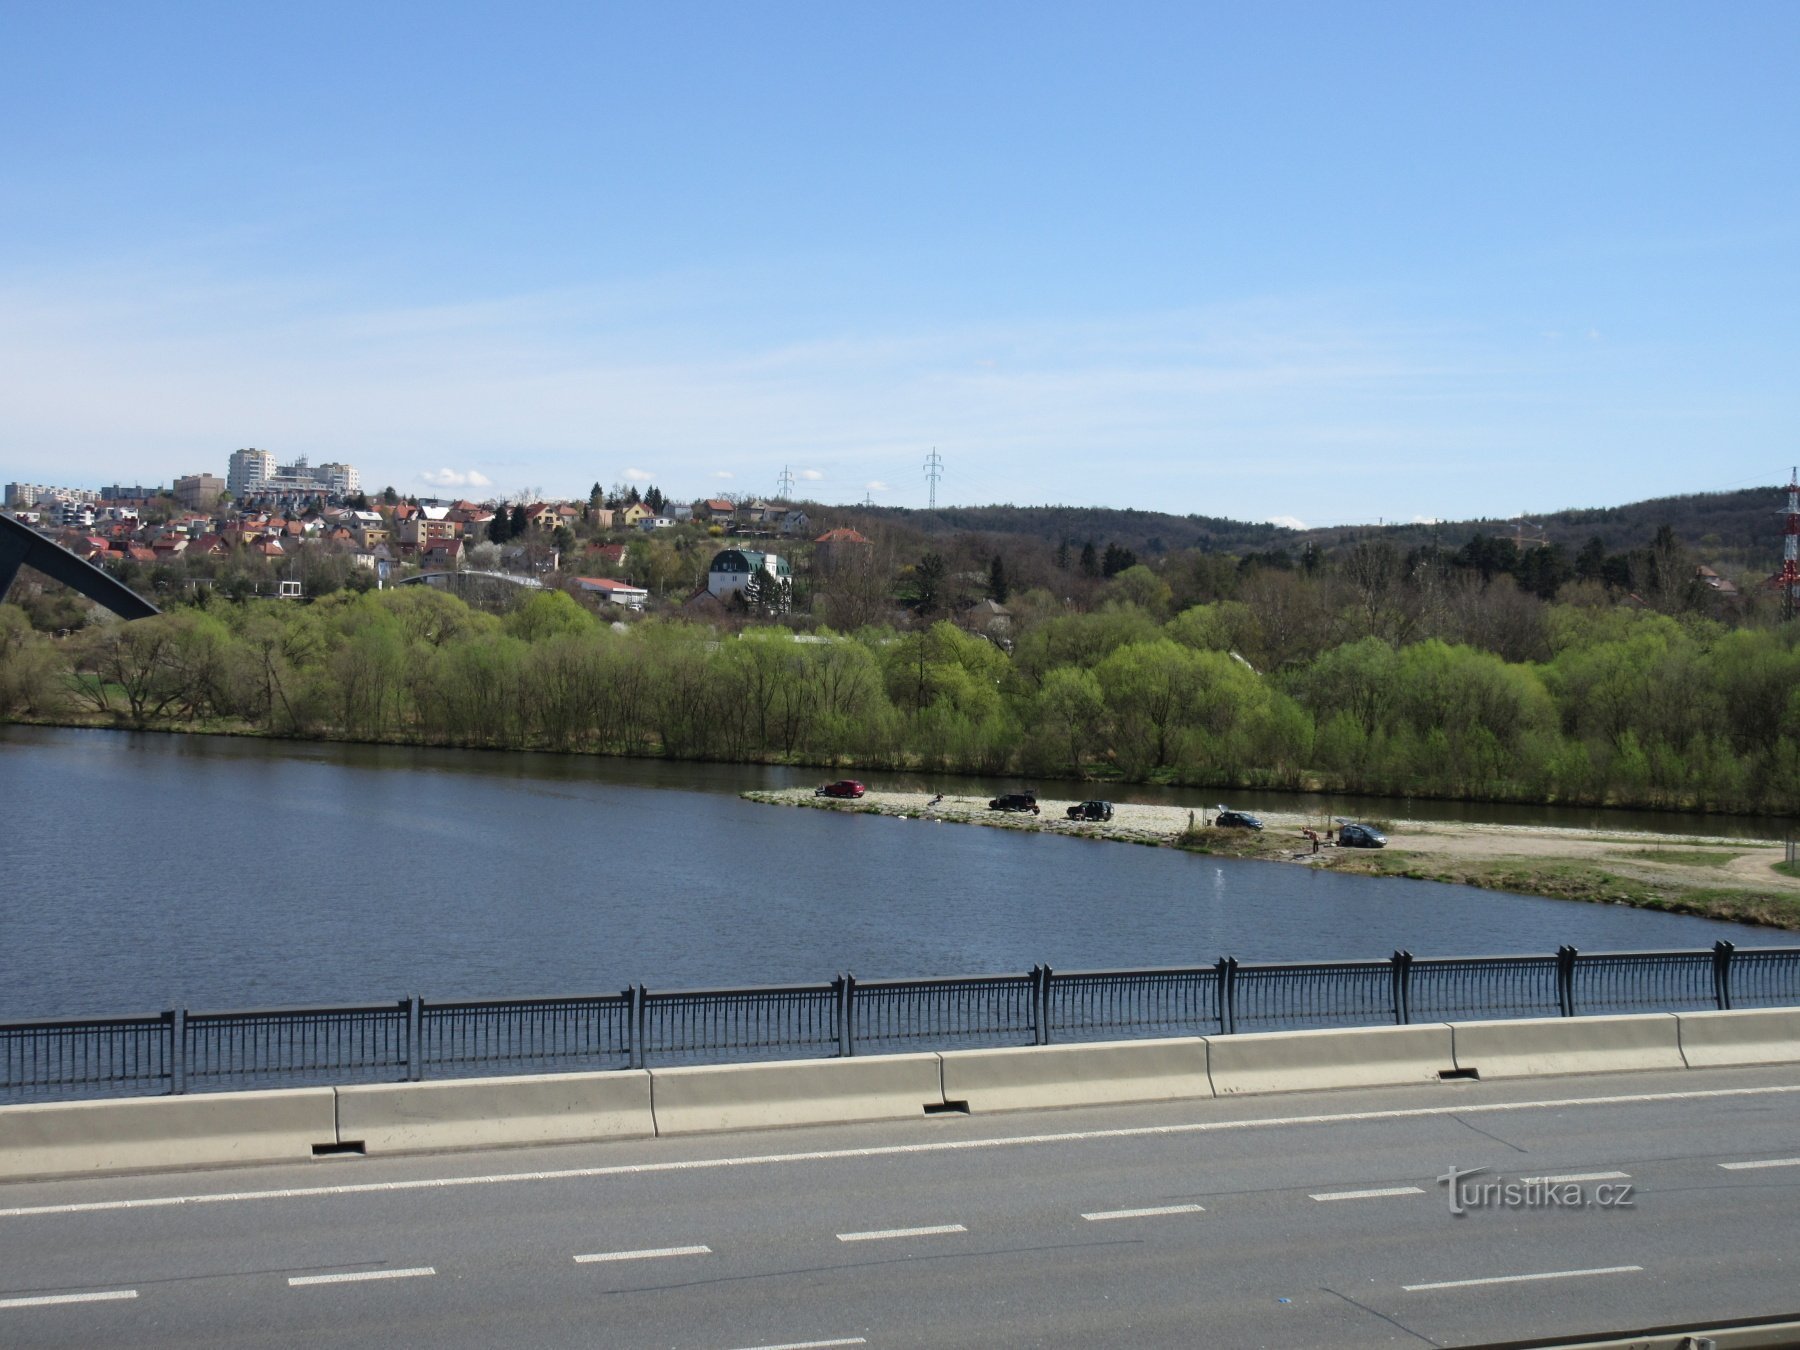 ラホヴィツェ - ラホヴィツェ橋の展望塔とベロンカ川とヴルタヴァ川の合流点